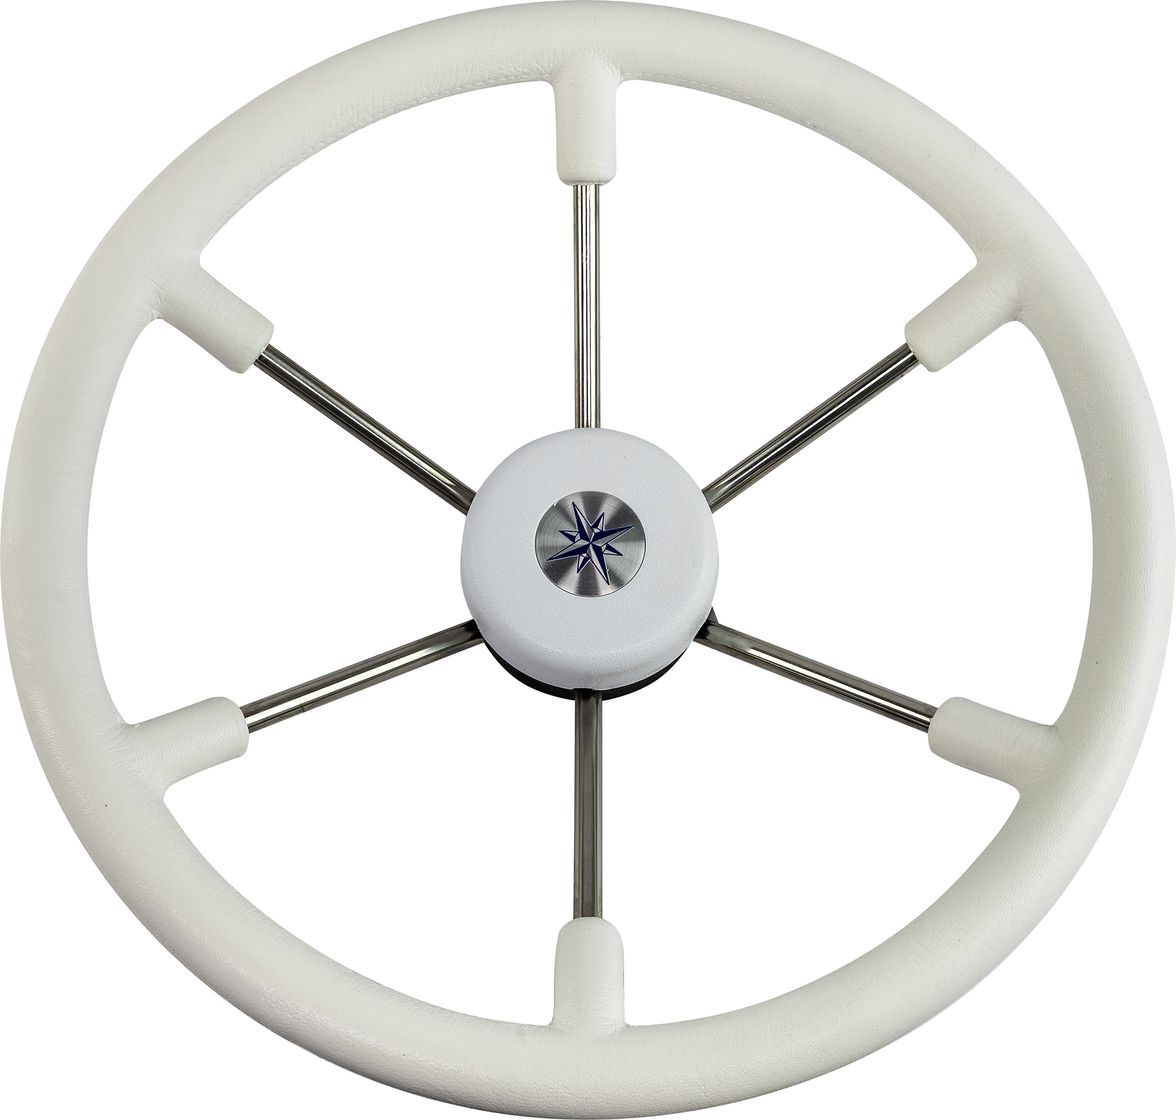 Рулевое колесо LEADER TANEGUM белый обод серебряные спицы д. 400 мм VN7400-08 рулевое колесо matrix белый обод more 10016474